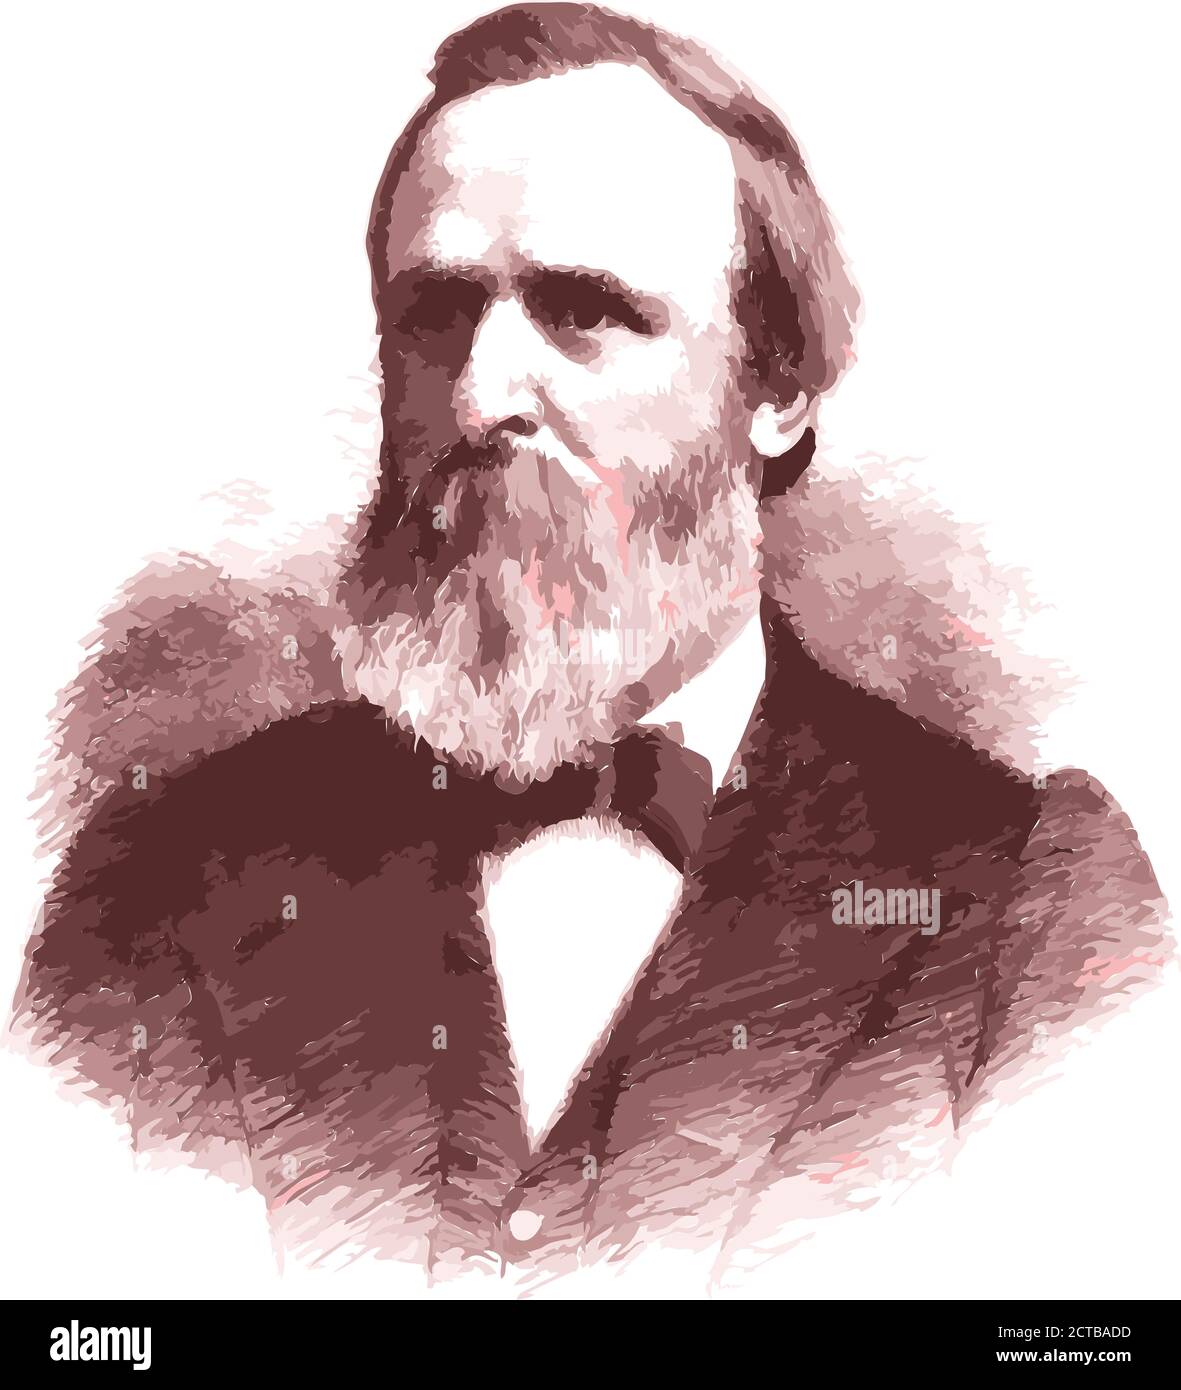 Vektor-Porträt von Präsident Rutherford Birchard Hayes. Rutherford Birchard Hayes (1822 – 1893) war ab 1877 der 19. Präsident der Vereinigten Staaten Stock Vektor